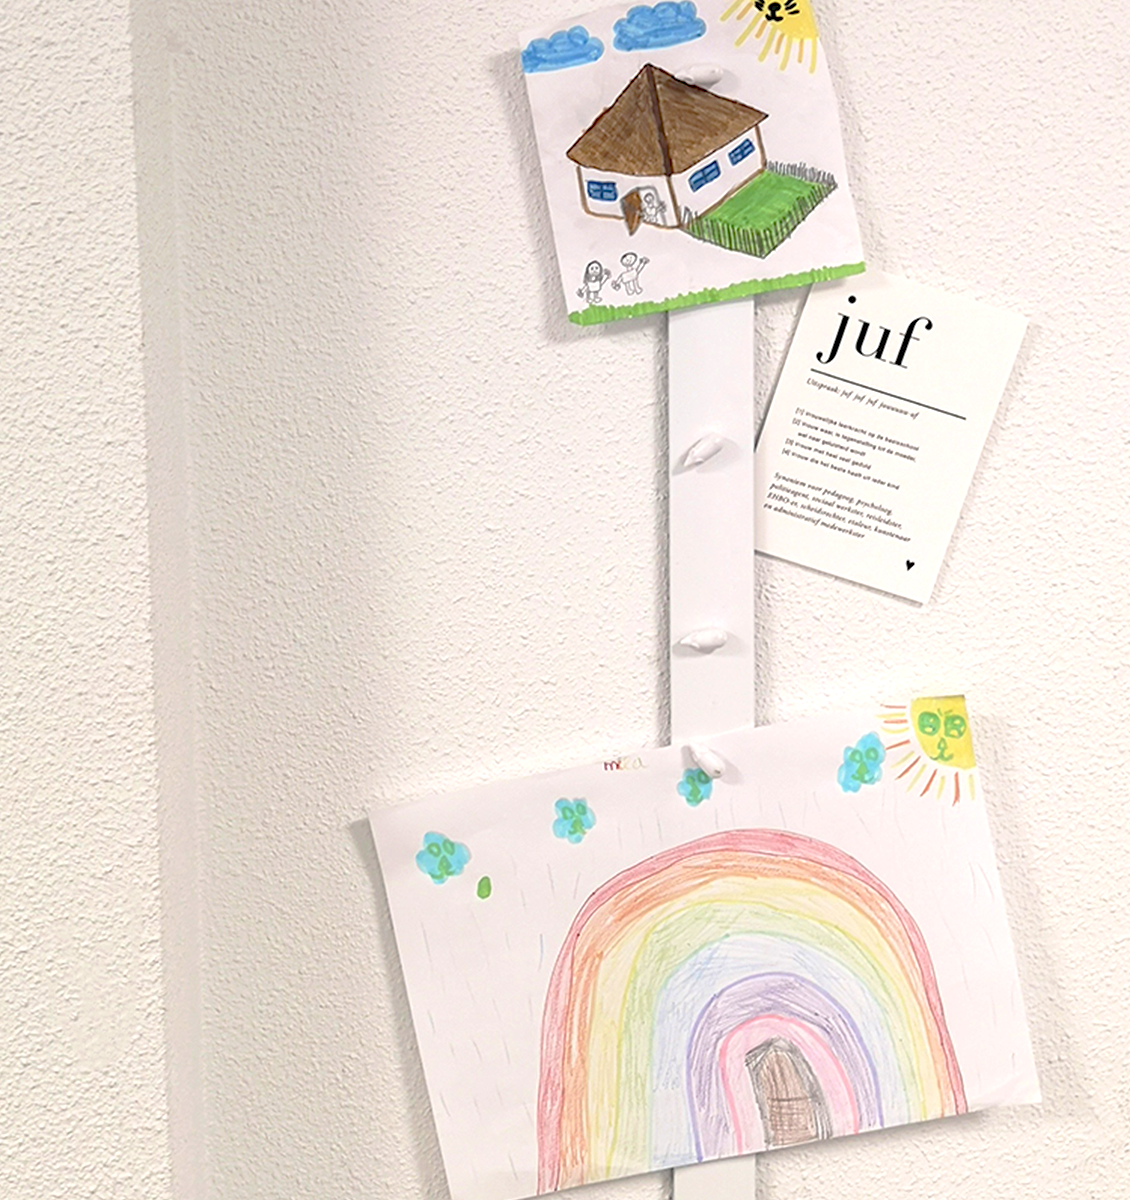 NL kindertekening van een huis en een regenboog